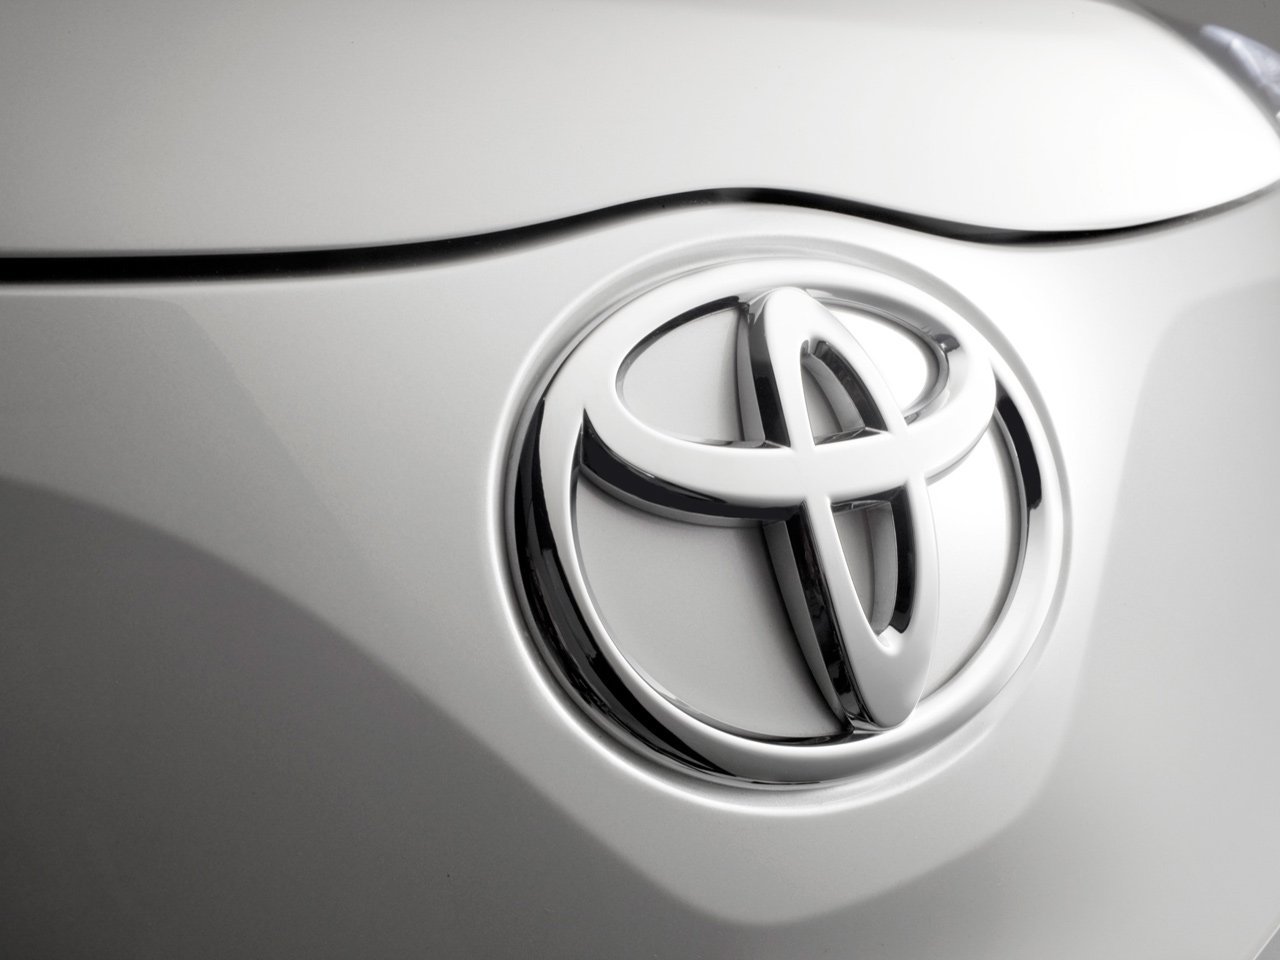 хэтчбек 3 дв. Toyota iQ 2009 - 2011г выпуска модификация 1.0 CVT (68 л.с.)